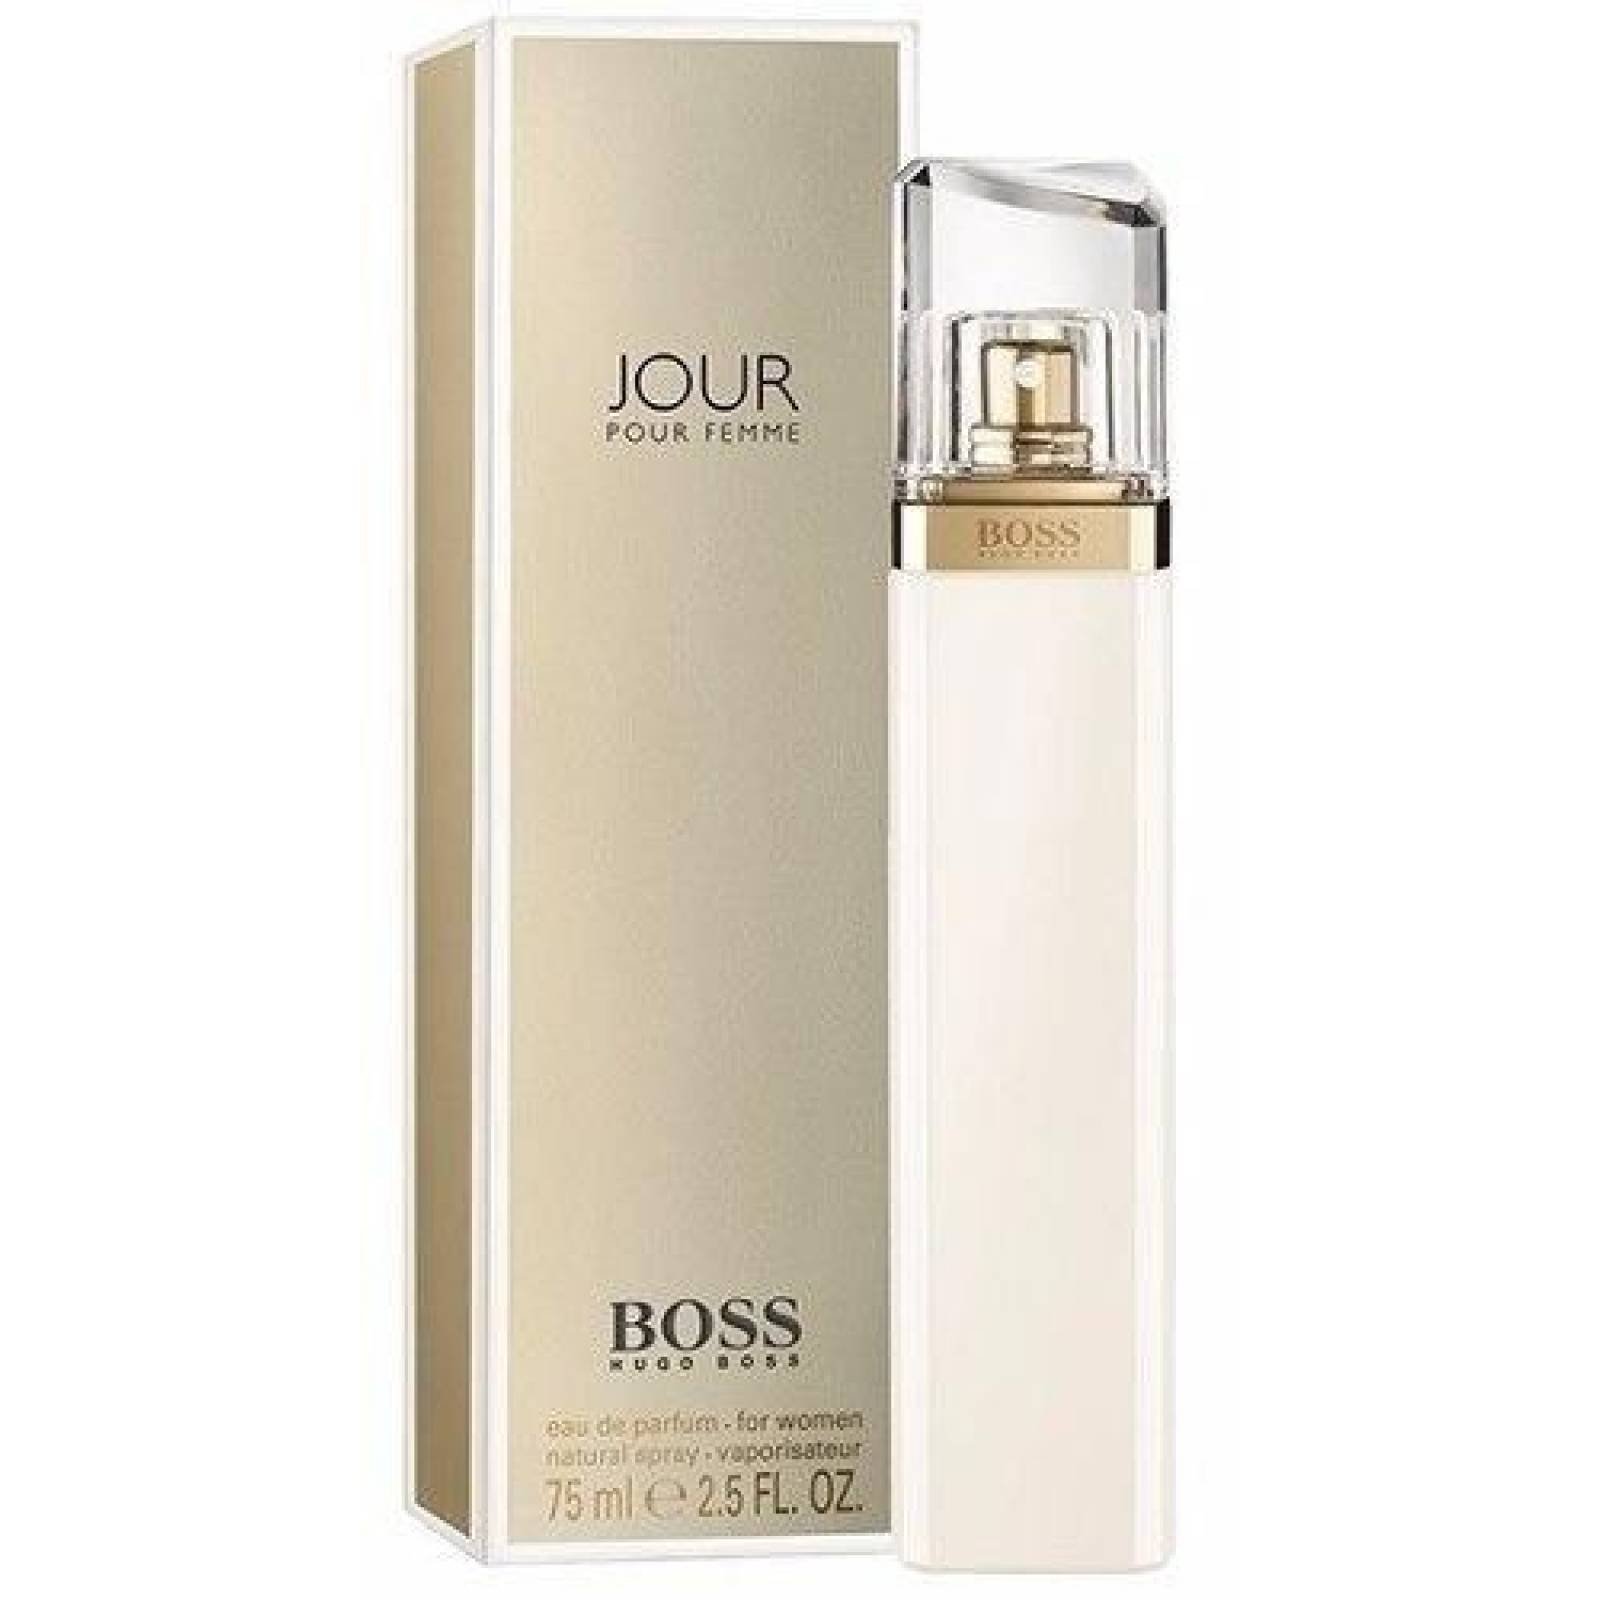 Boss Jour Dama Hugo Boss 75 Ml Edp Spray - Perfume Original